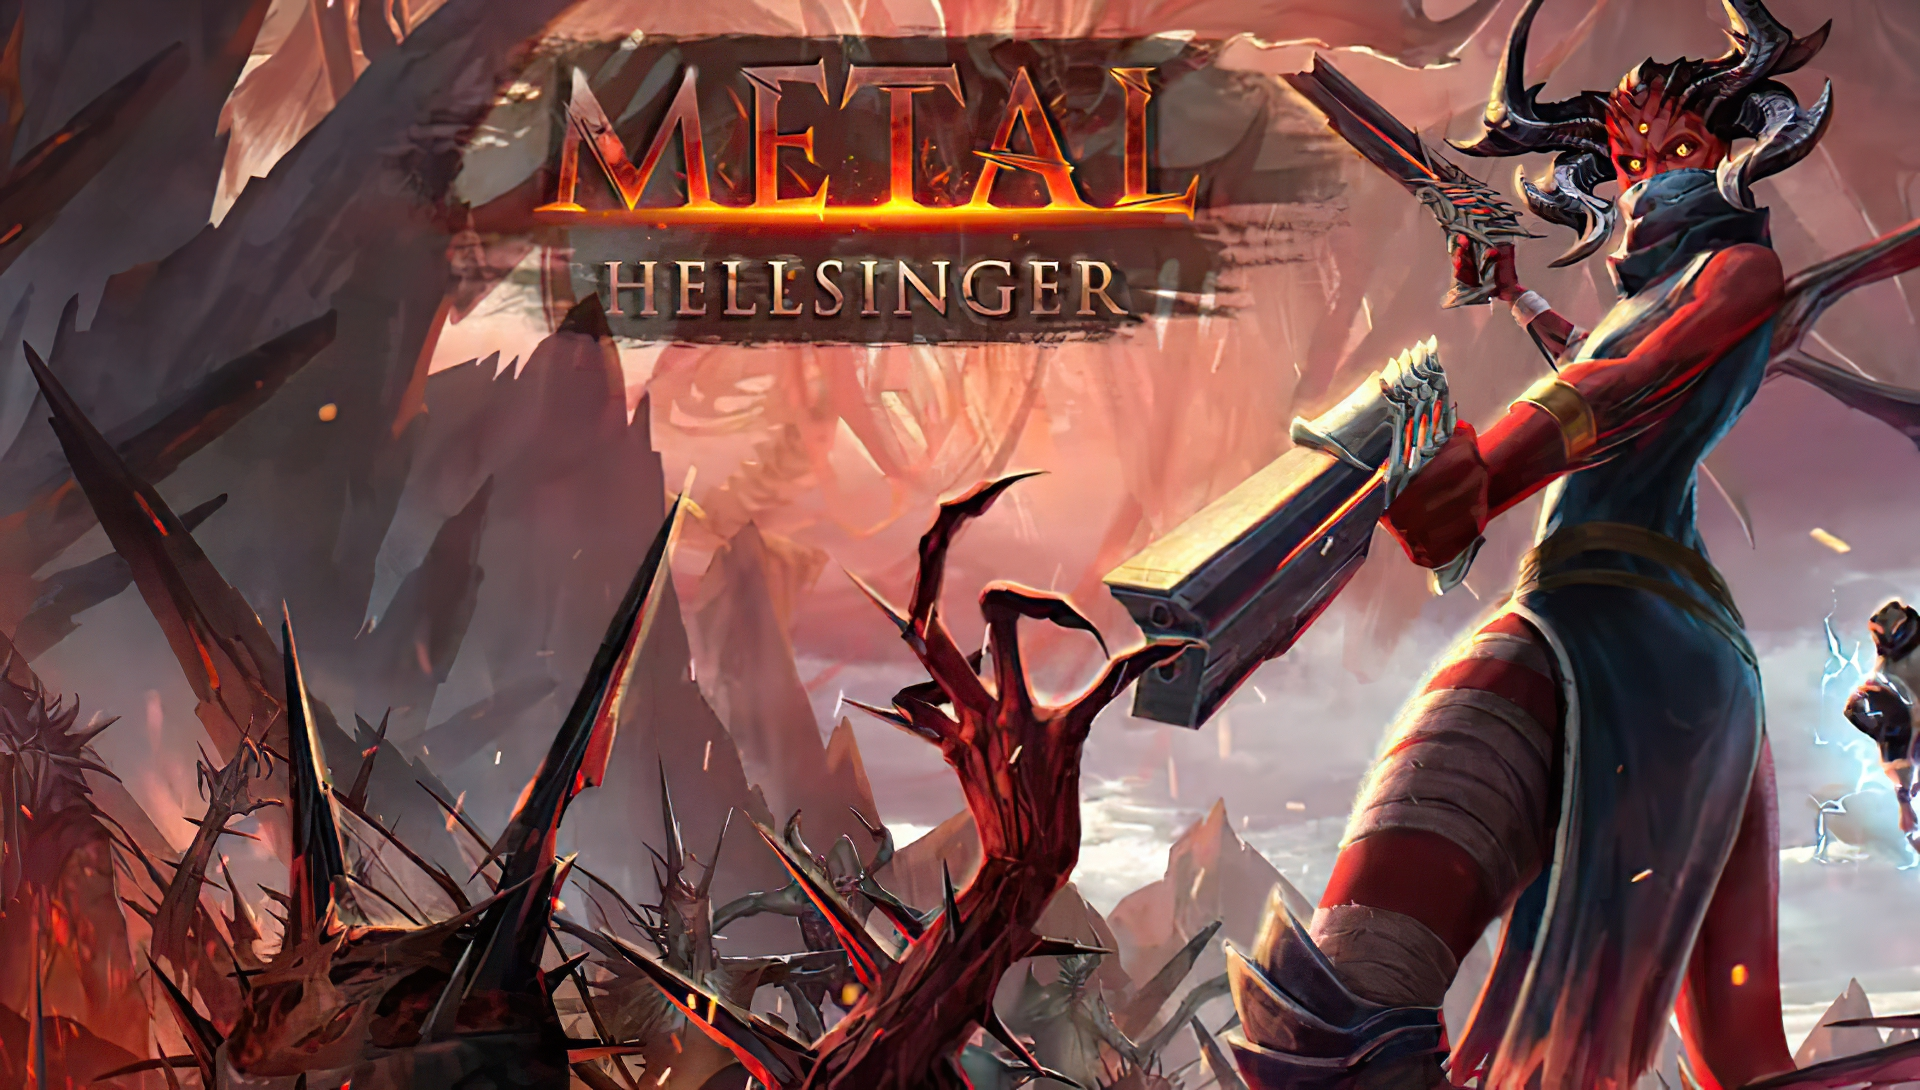 ⚡Критики остались довольны Metal Hellsinger — ритм-шутер получает первые  оценки, Видеоигры, Новости